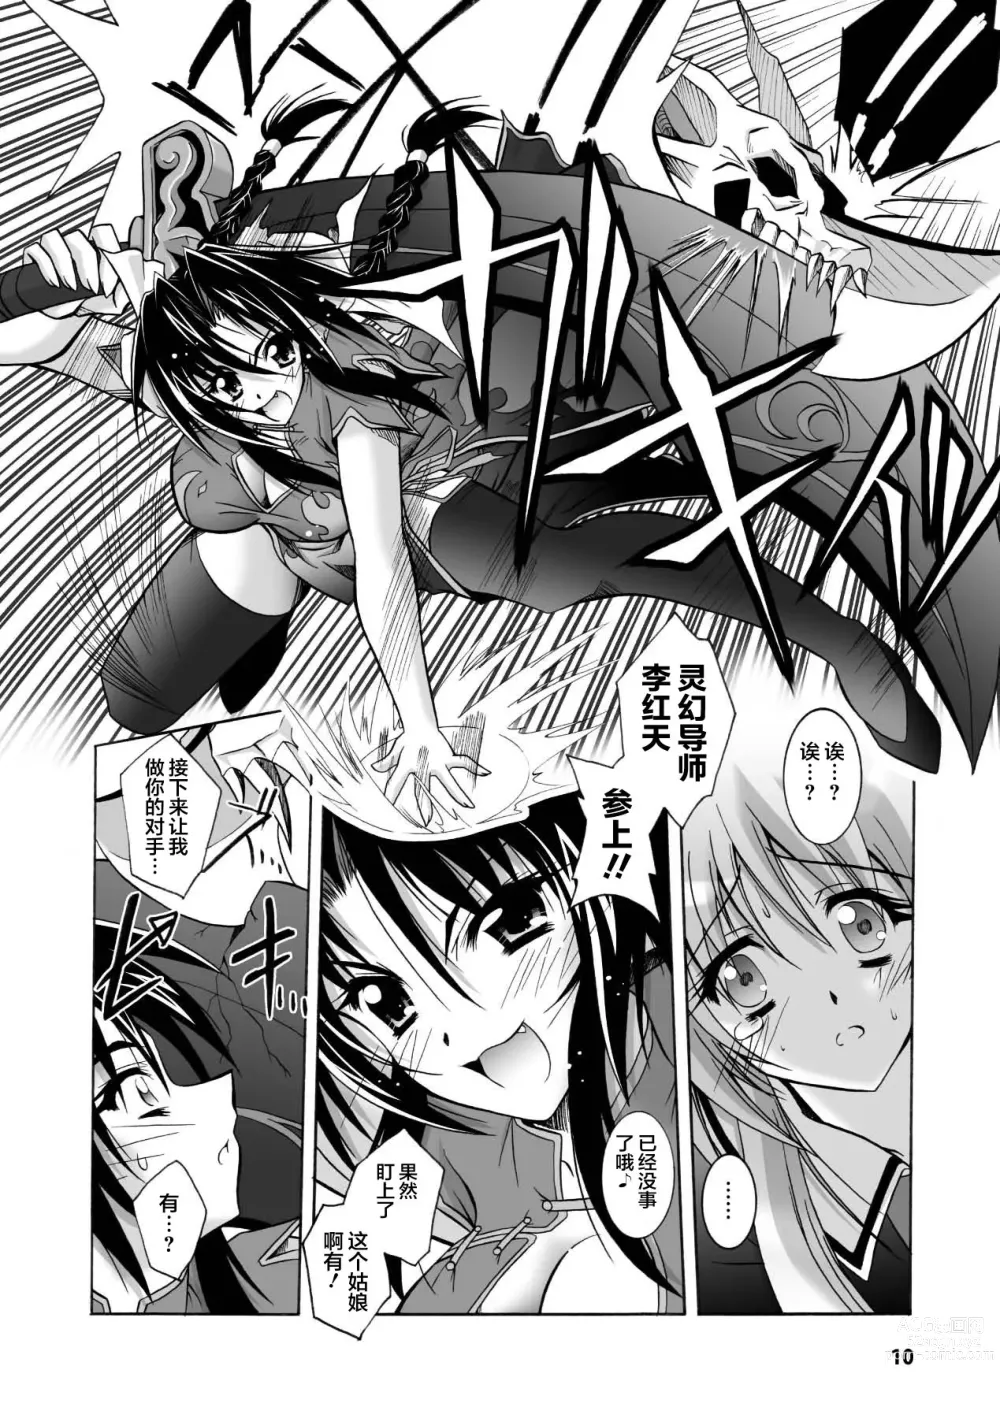 Page 10 of manga Matantei Toudou Shizuka no Inyou Jikenbo